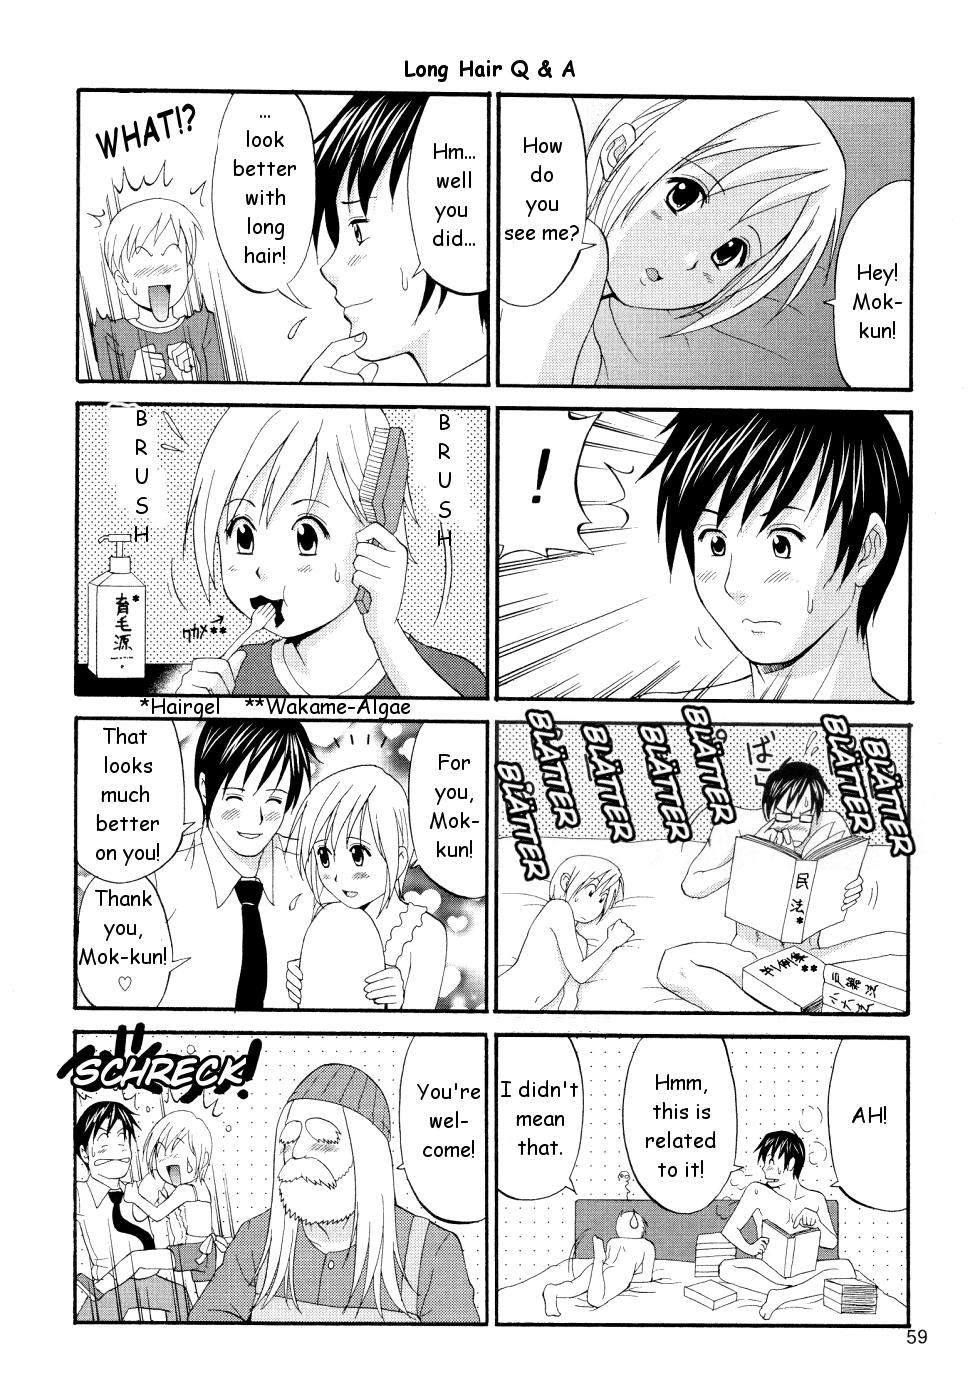 Abuse Boku no Pico Comic + Koushiki Character Genanshuu - Boku no pico Consolo - Page 59